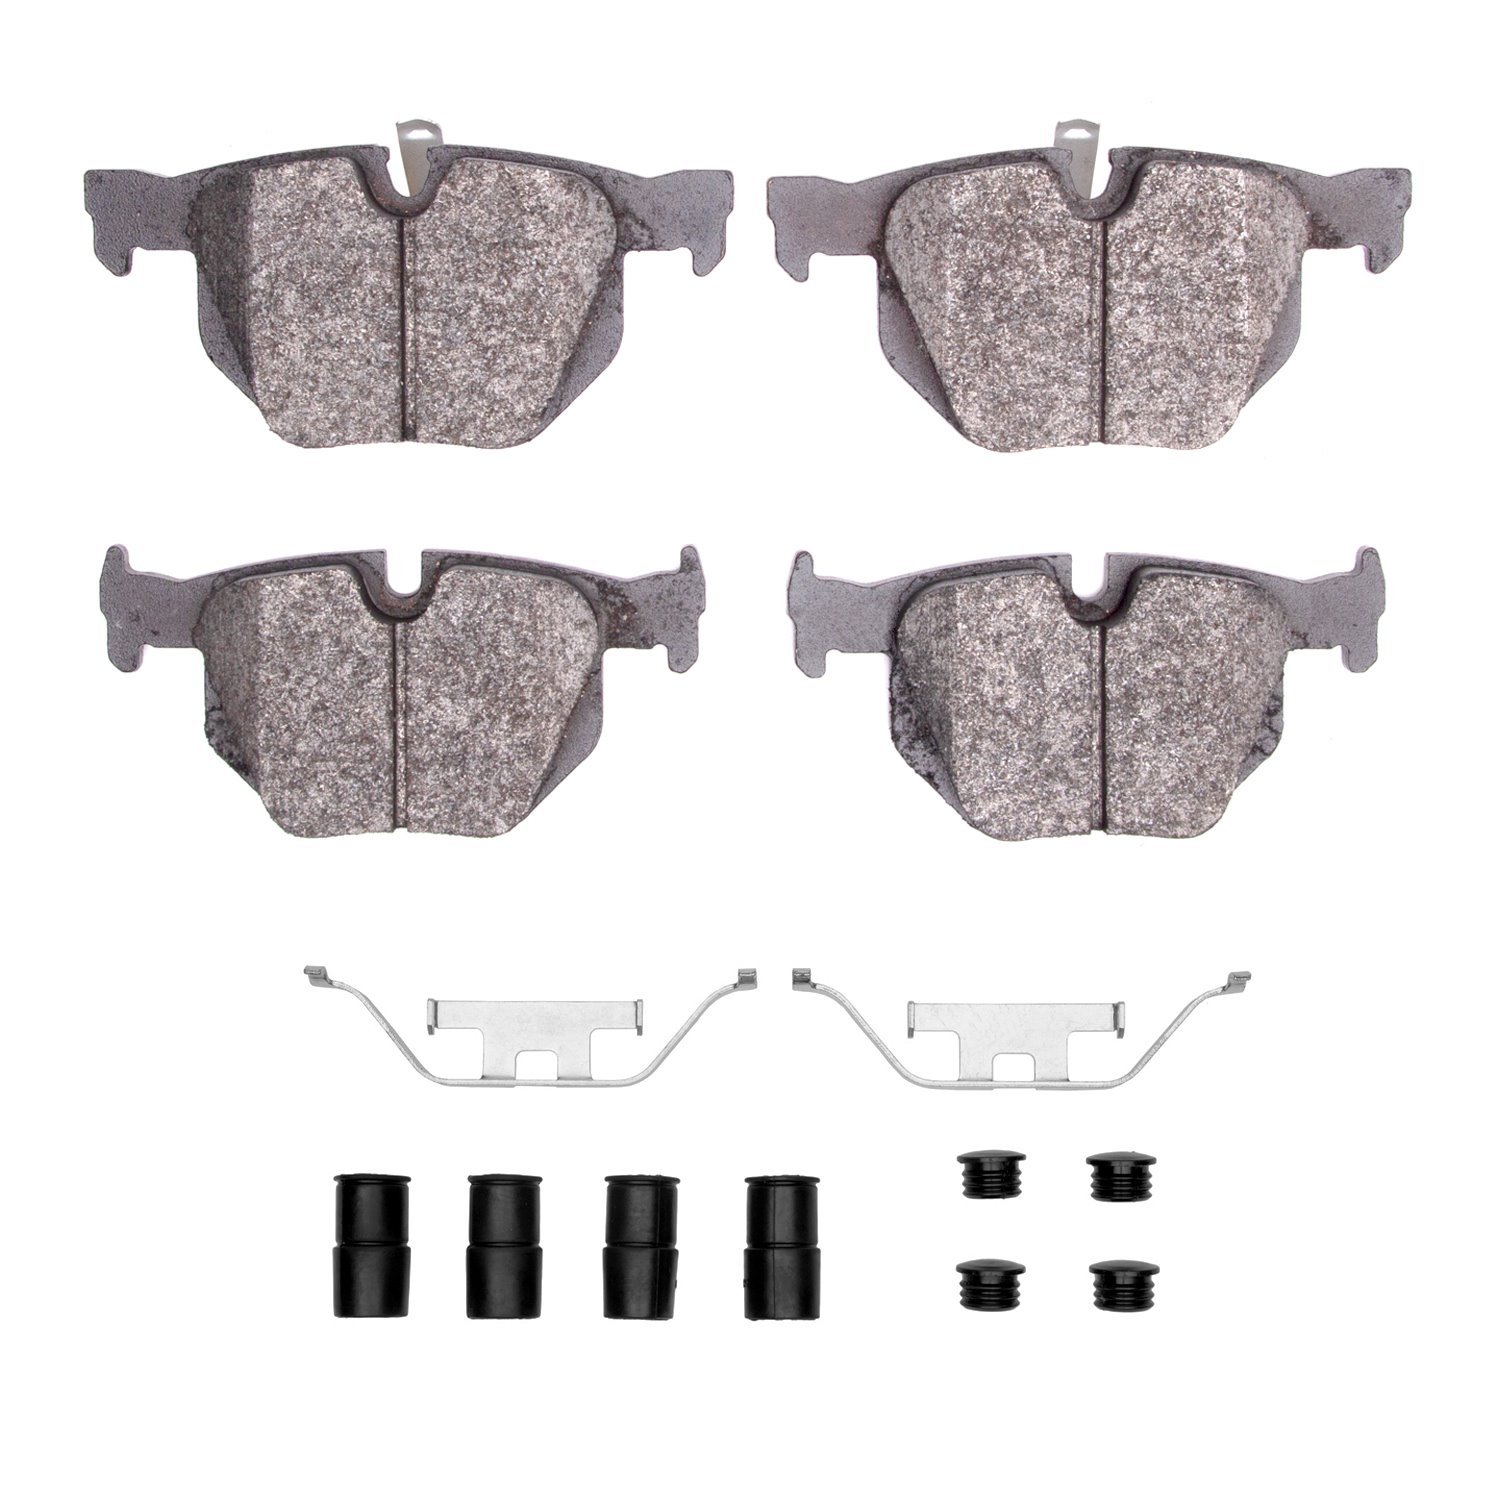 Semi-Metallic Brake Pads & Hardware Kit, 2006-2015 BMW, Position: Rear